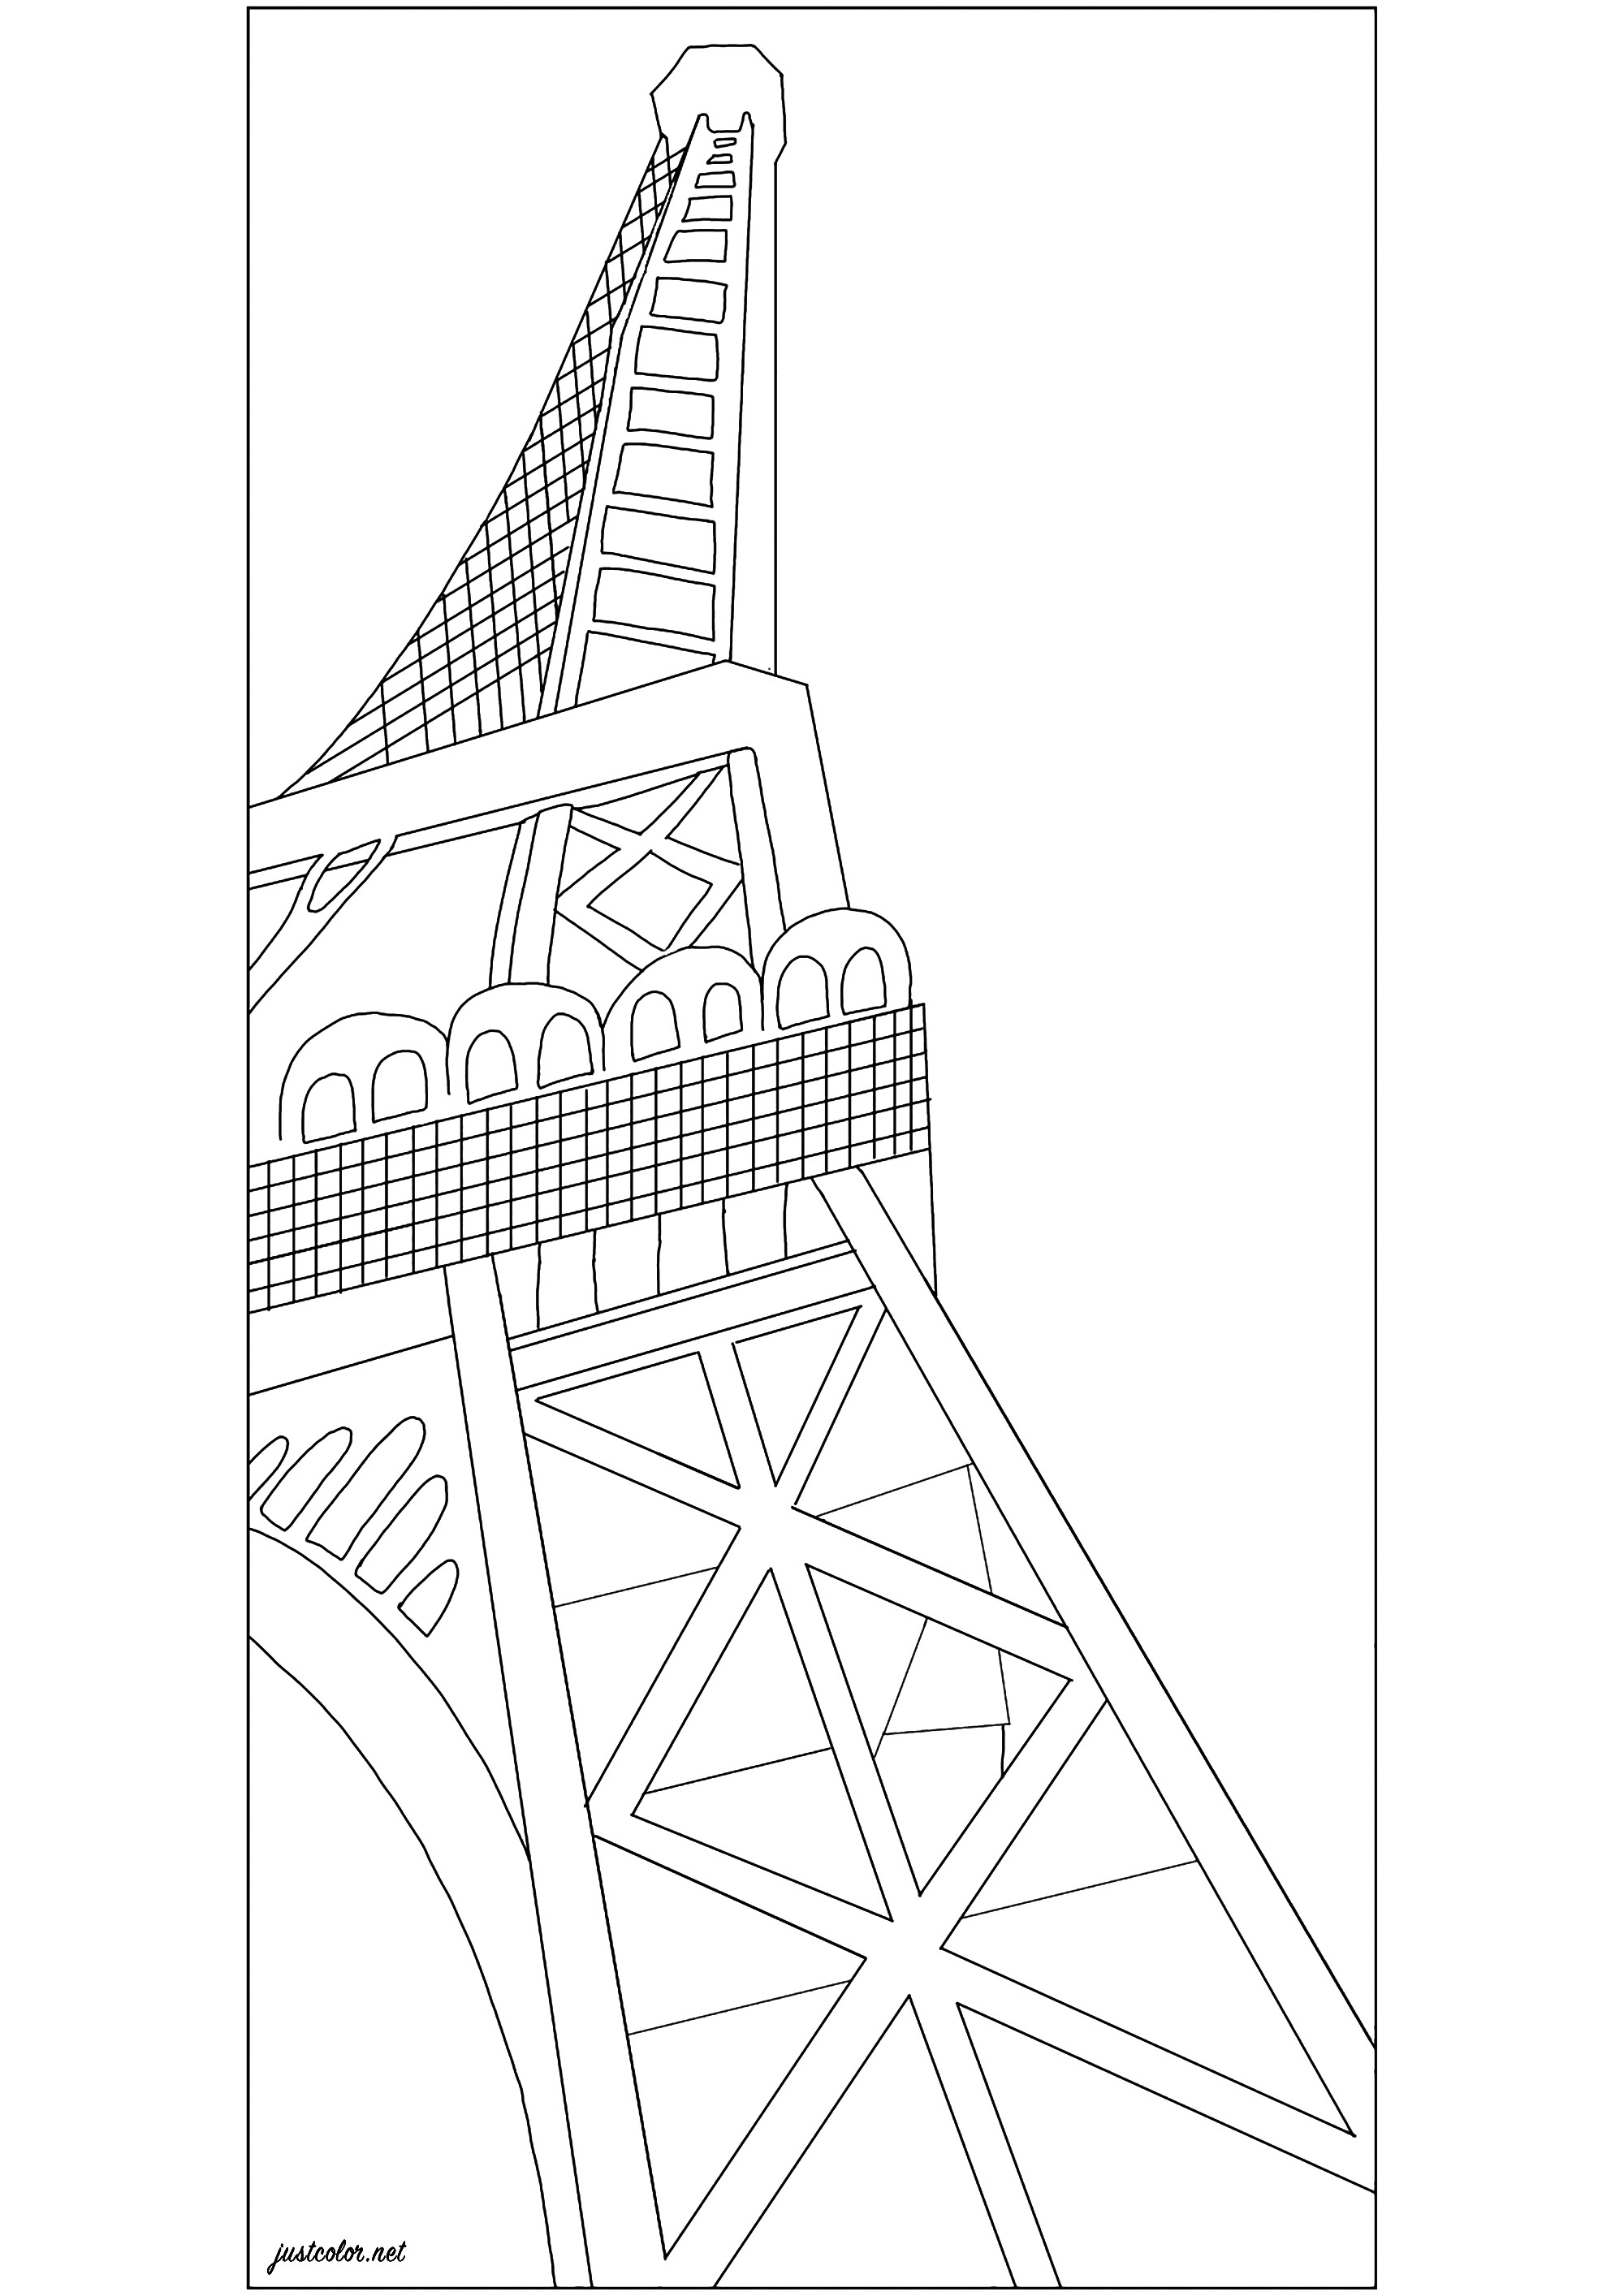 Coloração baseada em 'A Torre Eiffel' (1926) de Robert Delaunay. A Torre Eiffel, construída por Gustave Eiffel em 1889, tornou-se um símbolo de modernidade que fascinou o pintor Robert Delaunay. Depois de a ter decomposto numa grande série cubista no início da década de 1910, o artista glorificou-a utilizando cores extravagantes e um poderoso efeito de vista de baixo, frequentemente adotado pelos fotógrafos da época, Artista : Jade F